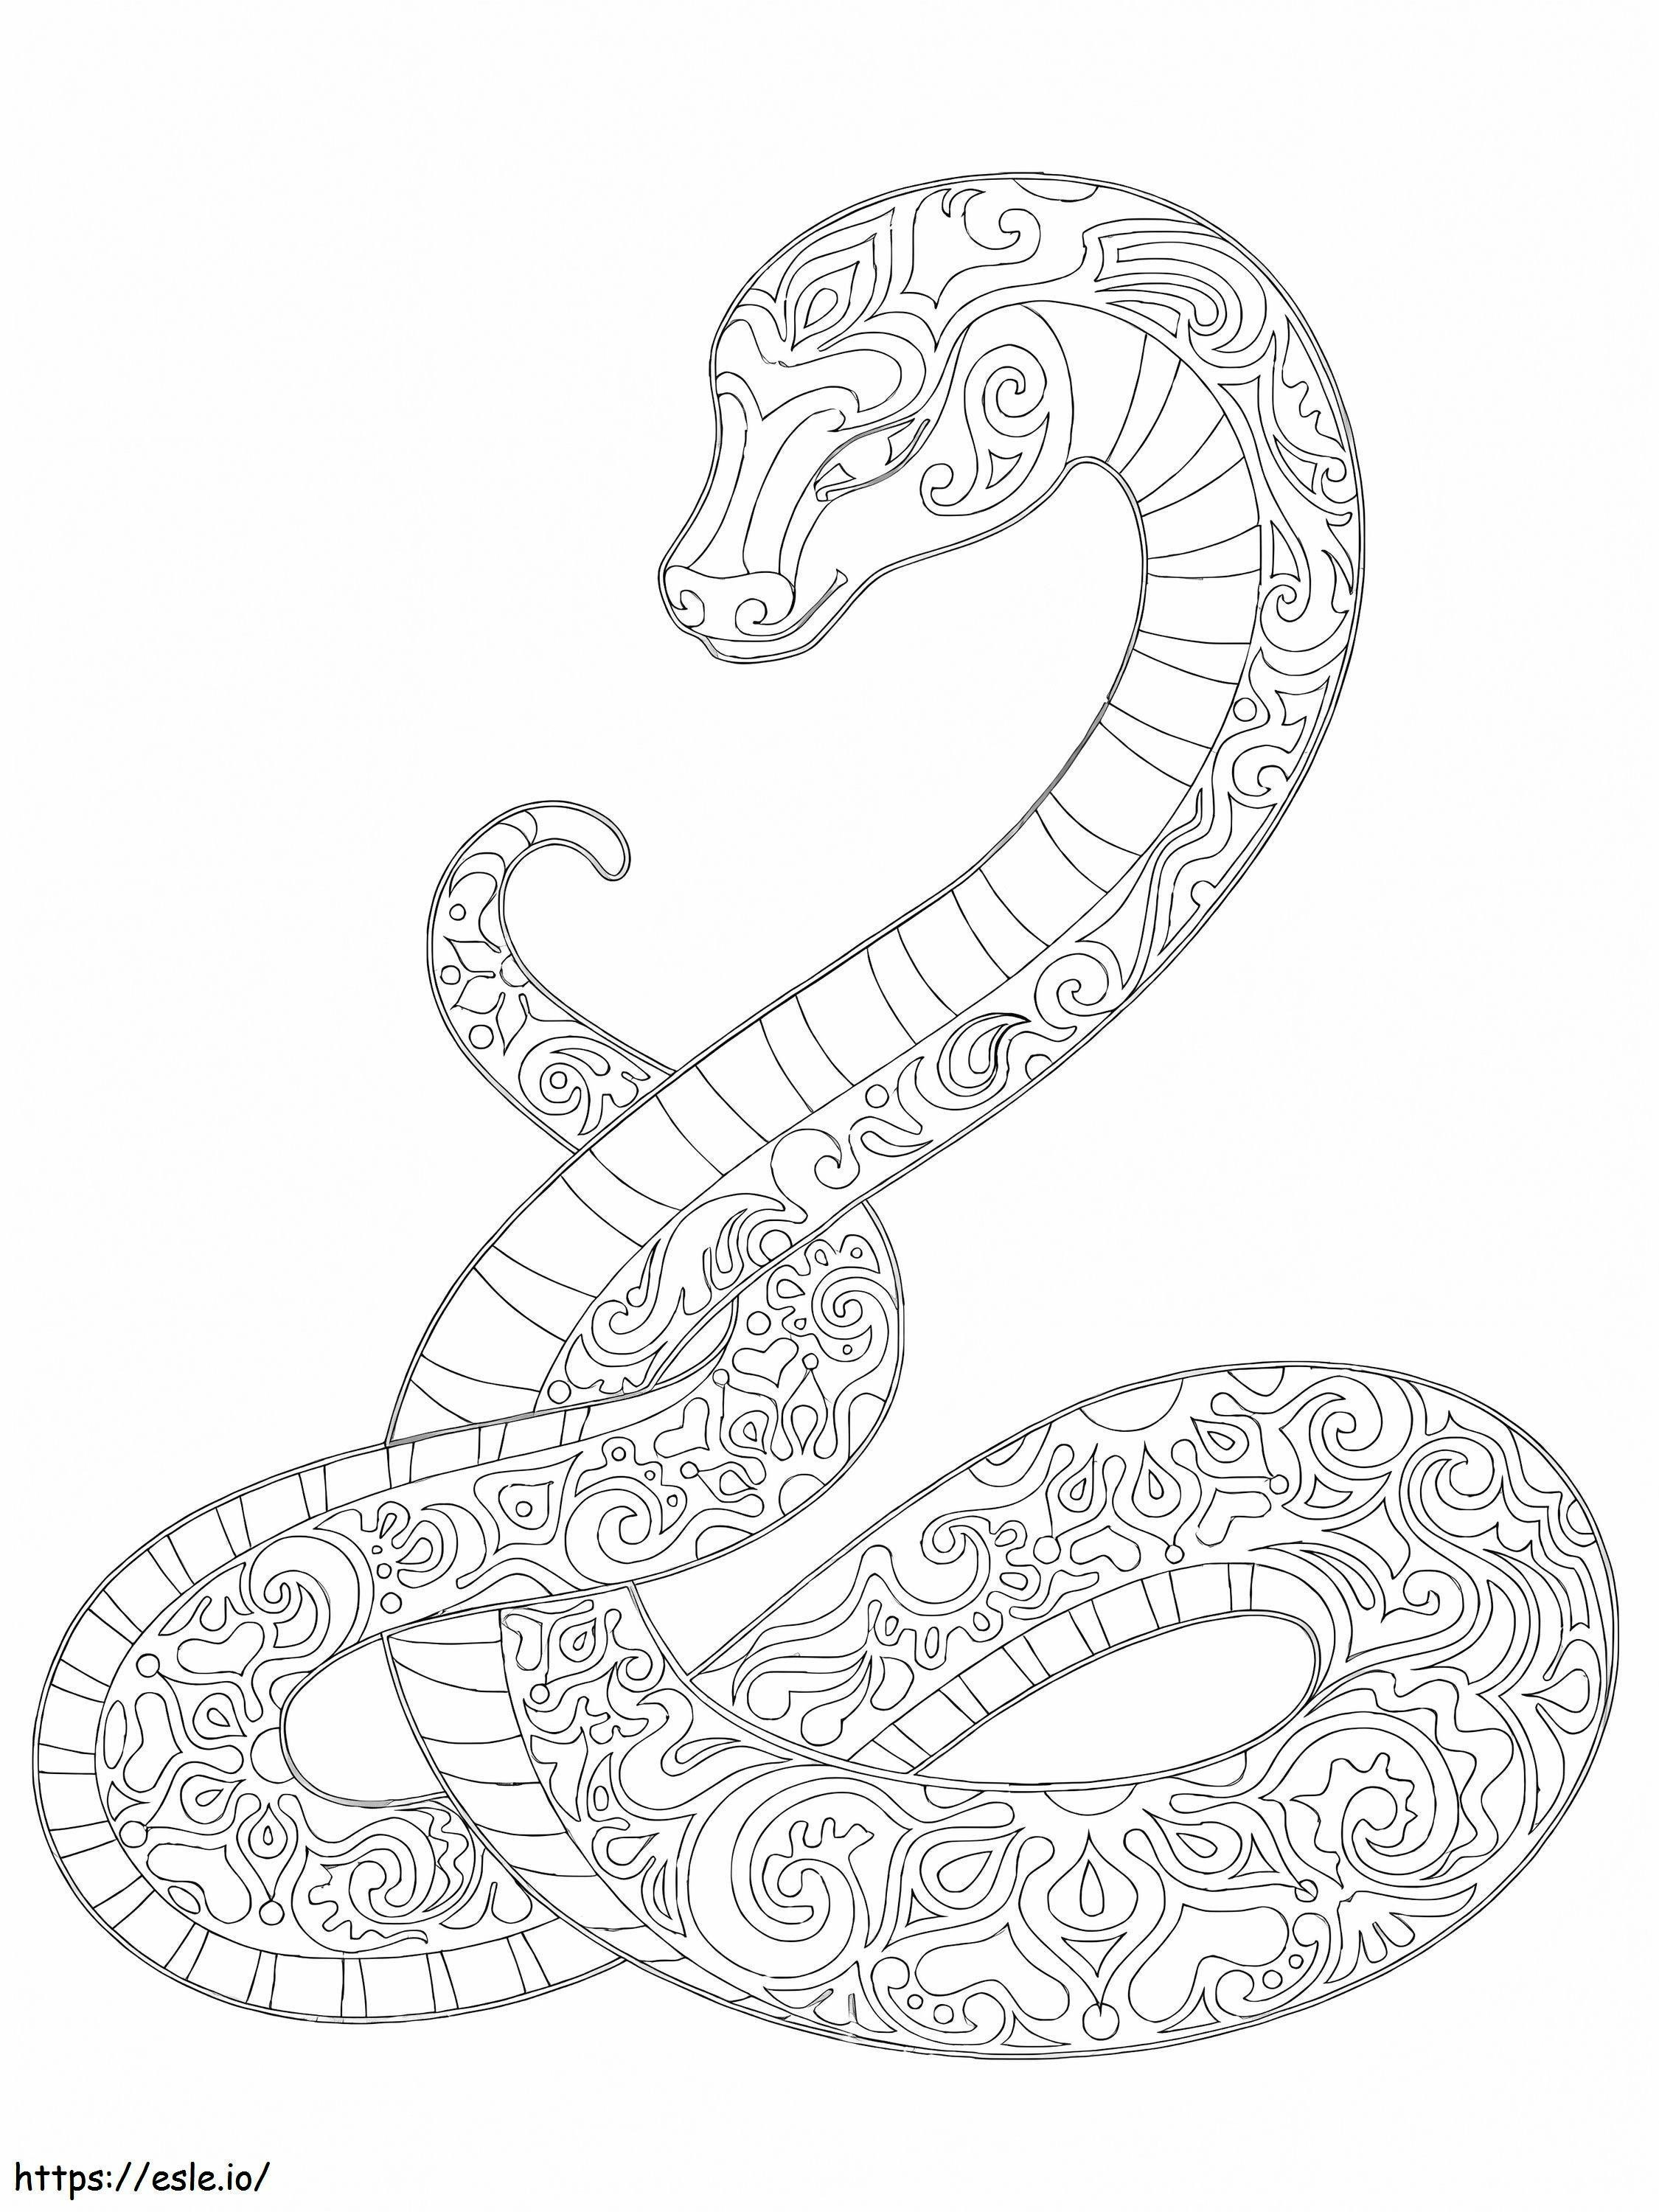 Serpiente mandala para colorear